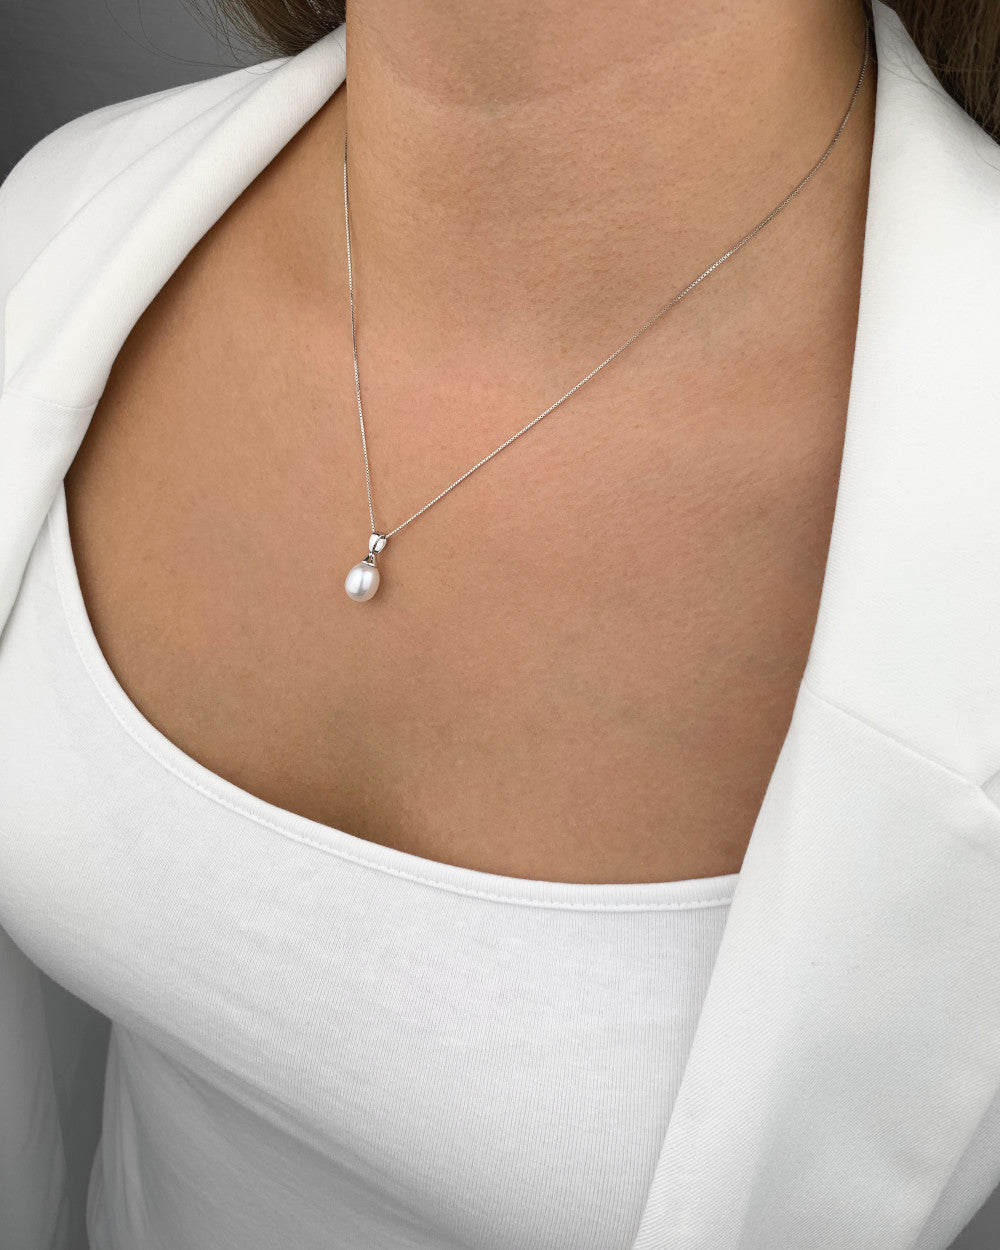 DANIEL CLIFFORD „Maggie“ Damen Halskette Silber 925 rhodiniert Anhänger Süßwasserzucht Perle, 45cm Silberkette mit Perlenanhänger